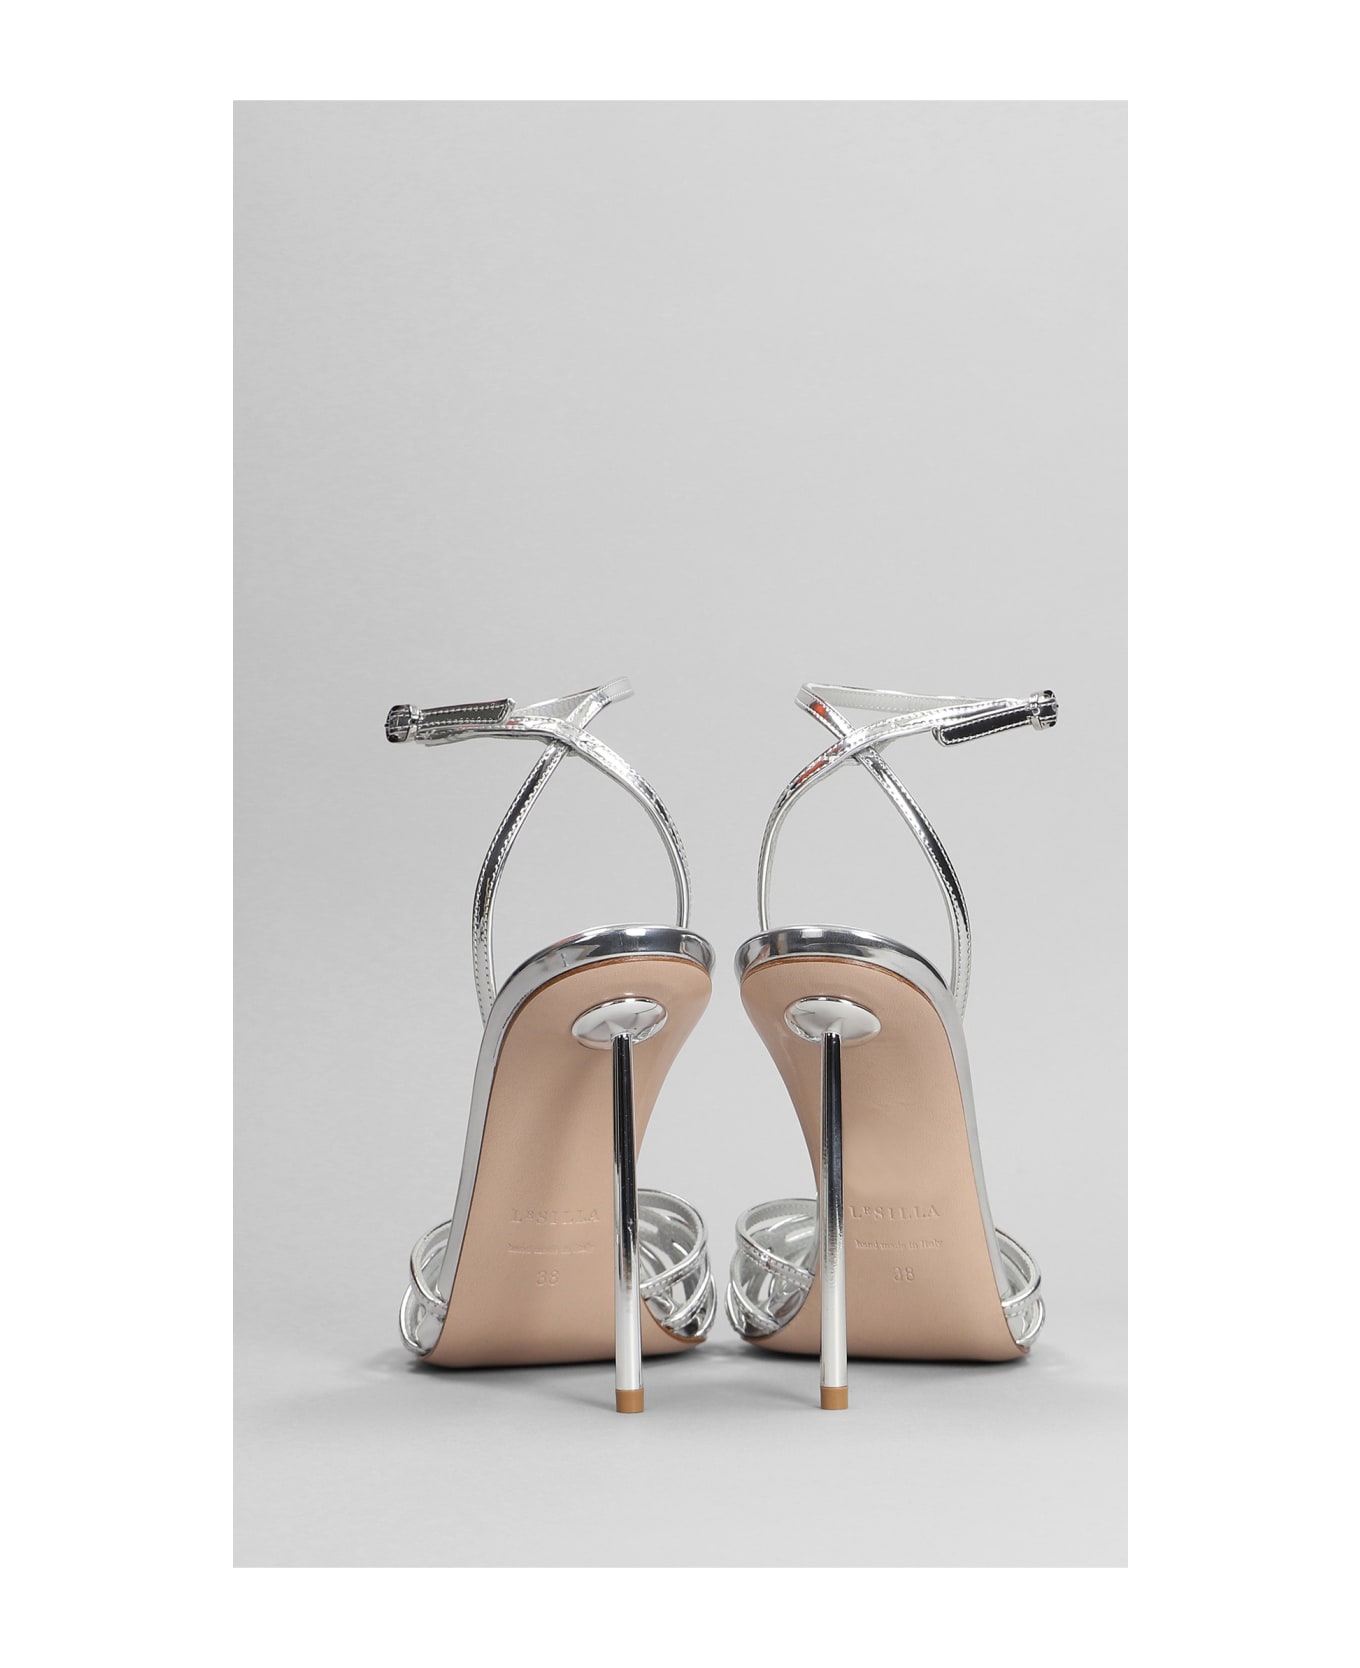 Le Silla Bella Sandals In Silver Leather - silver サンダル